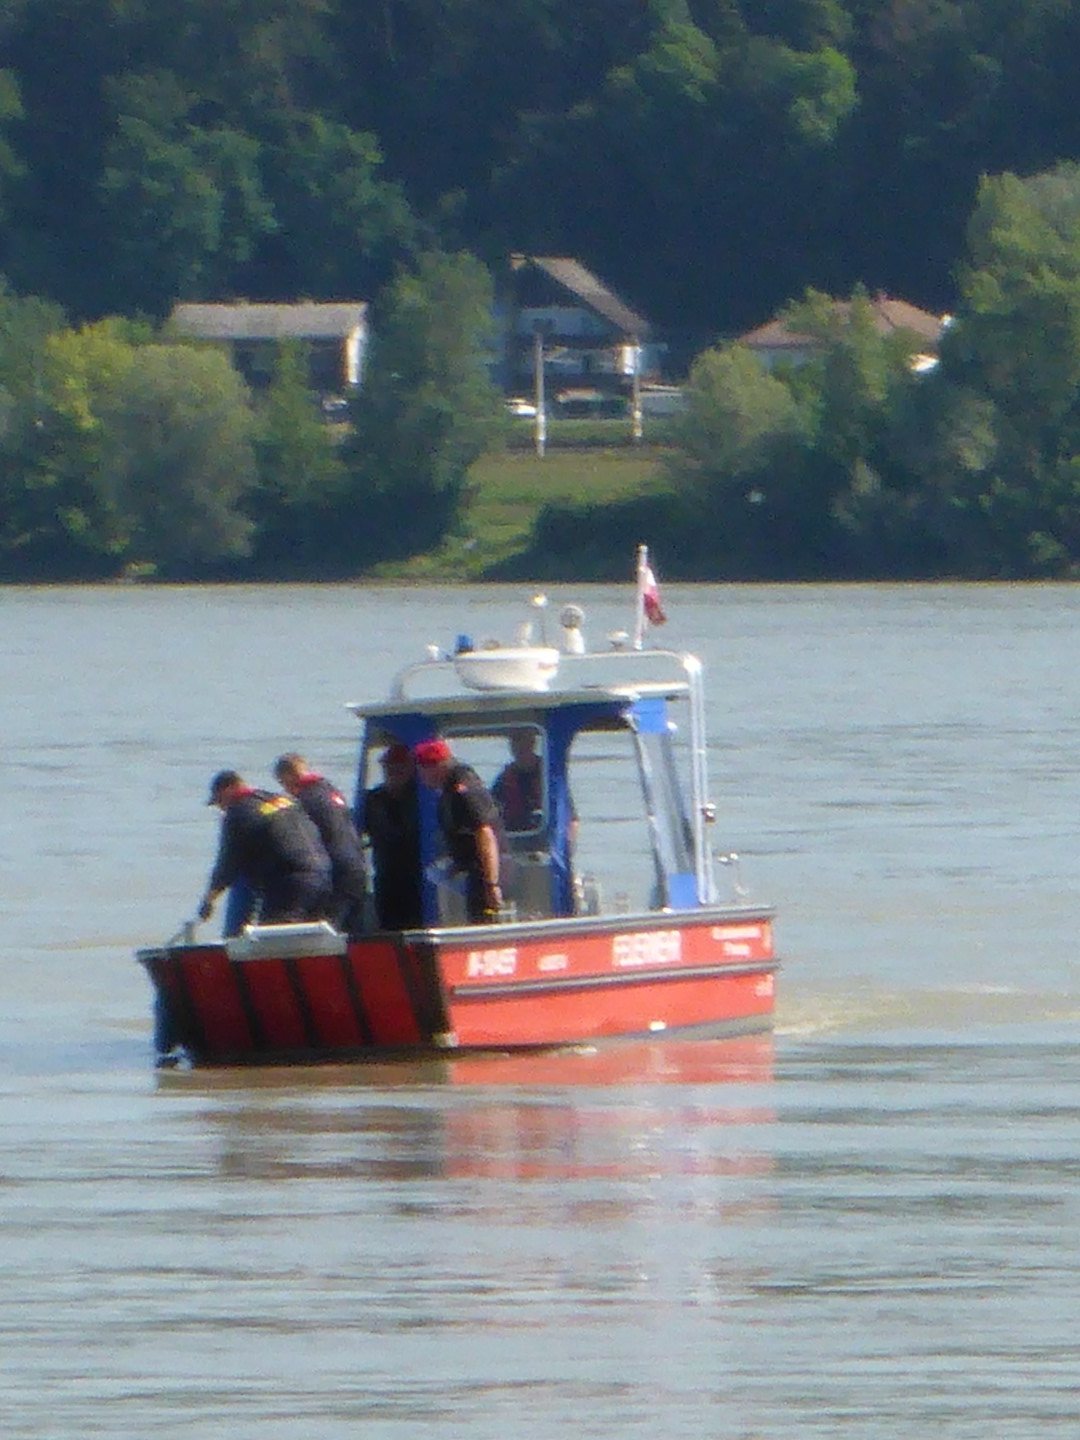 Ausbildungsprüfung-Feuerwehrboote-in-Bronze-47-Groß